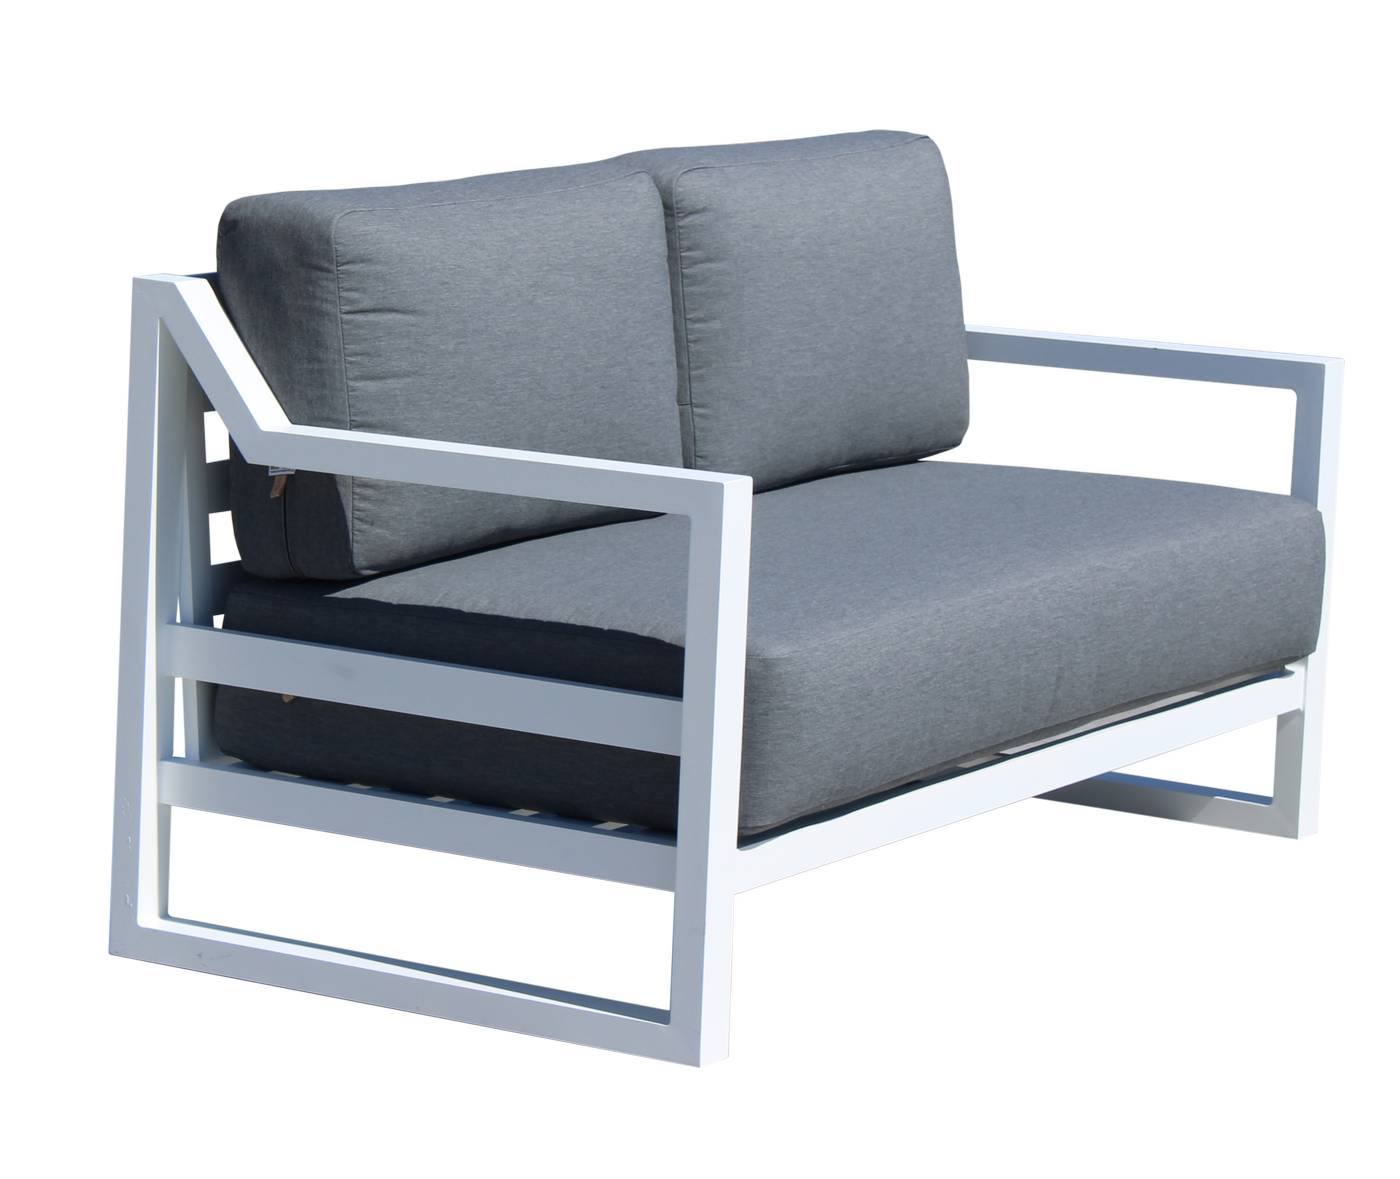 Set Aluminio Luxe Dublian-7 - Lujoso conjunto de aluminio: sofá 2 plazas + 2 sillones + mesa de centro. Color conjunto: blanco, antracita o champagne.